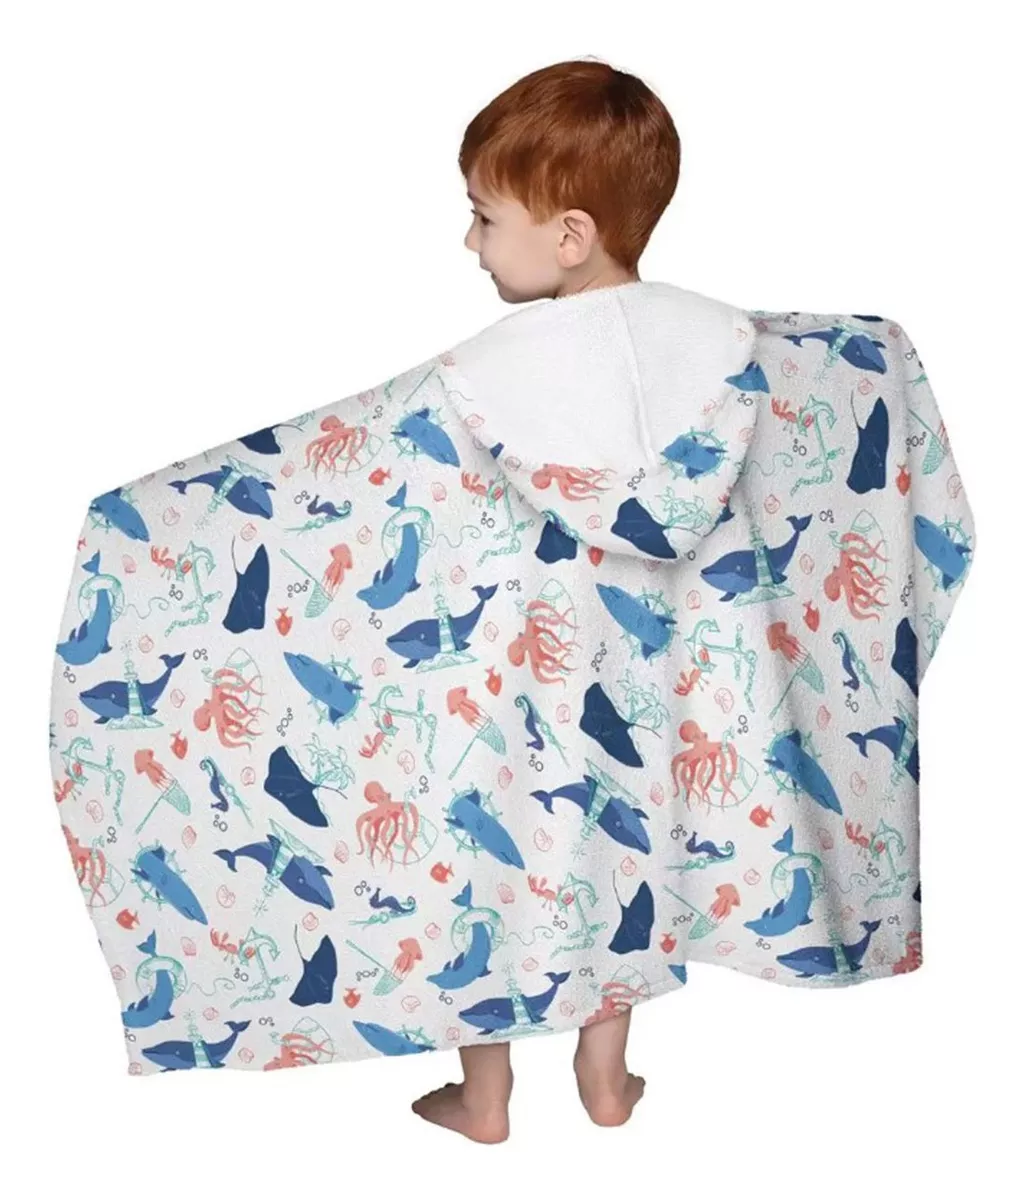 Segunda imagem para pesquisa de toalha infantil